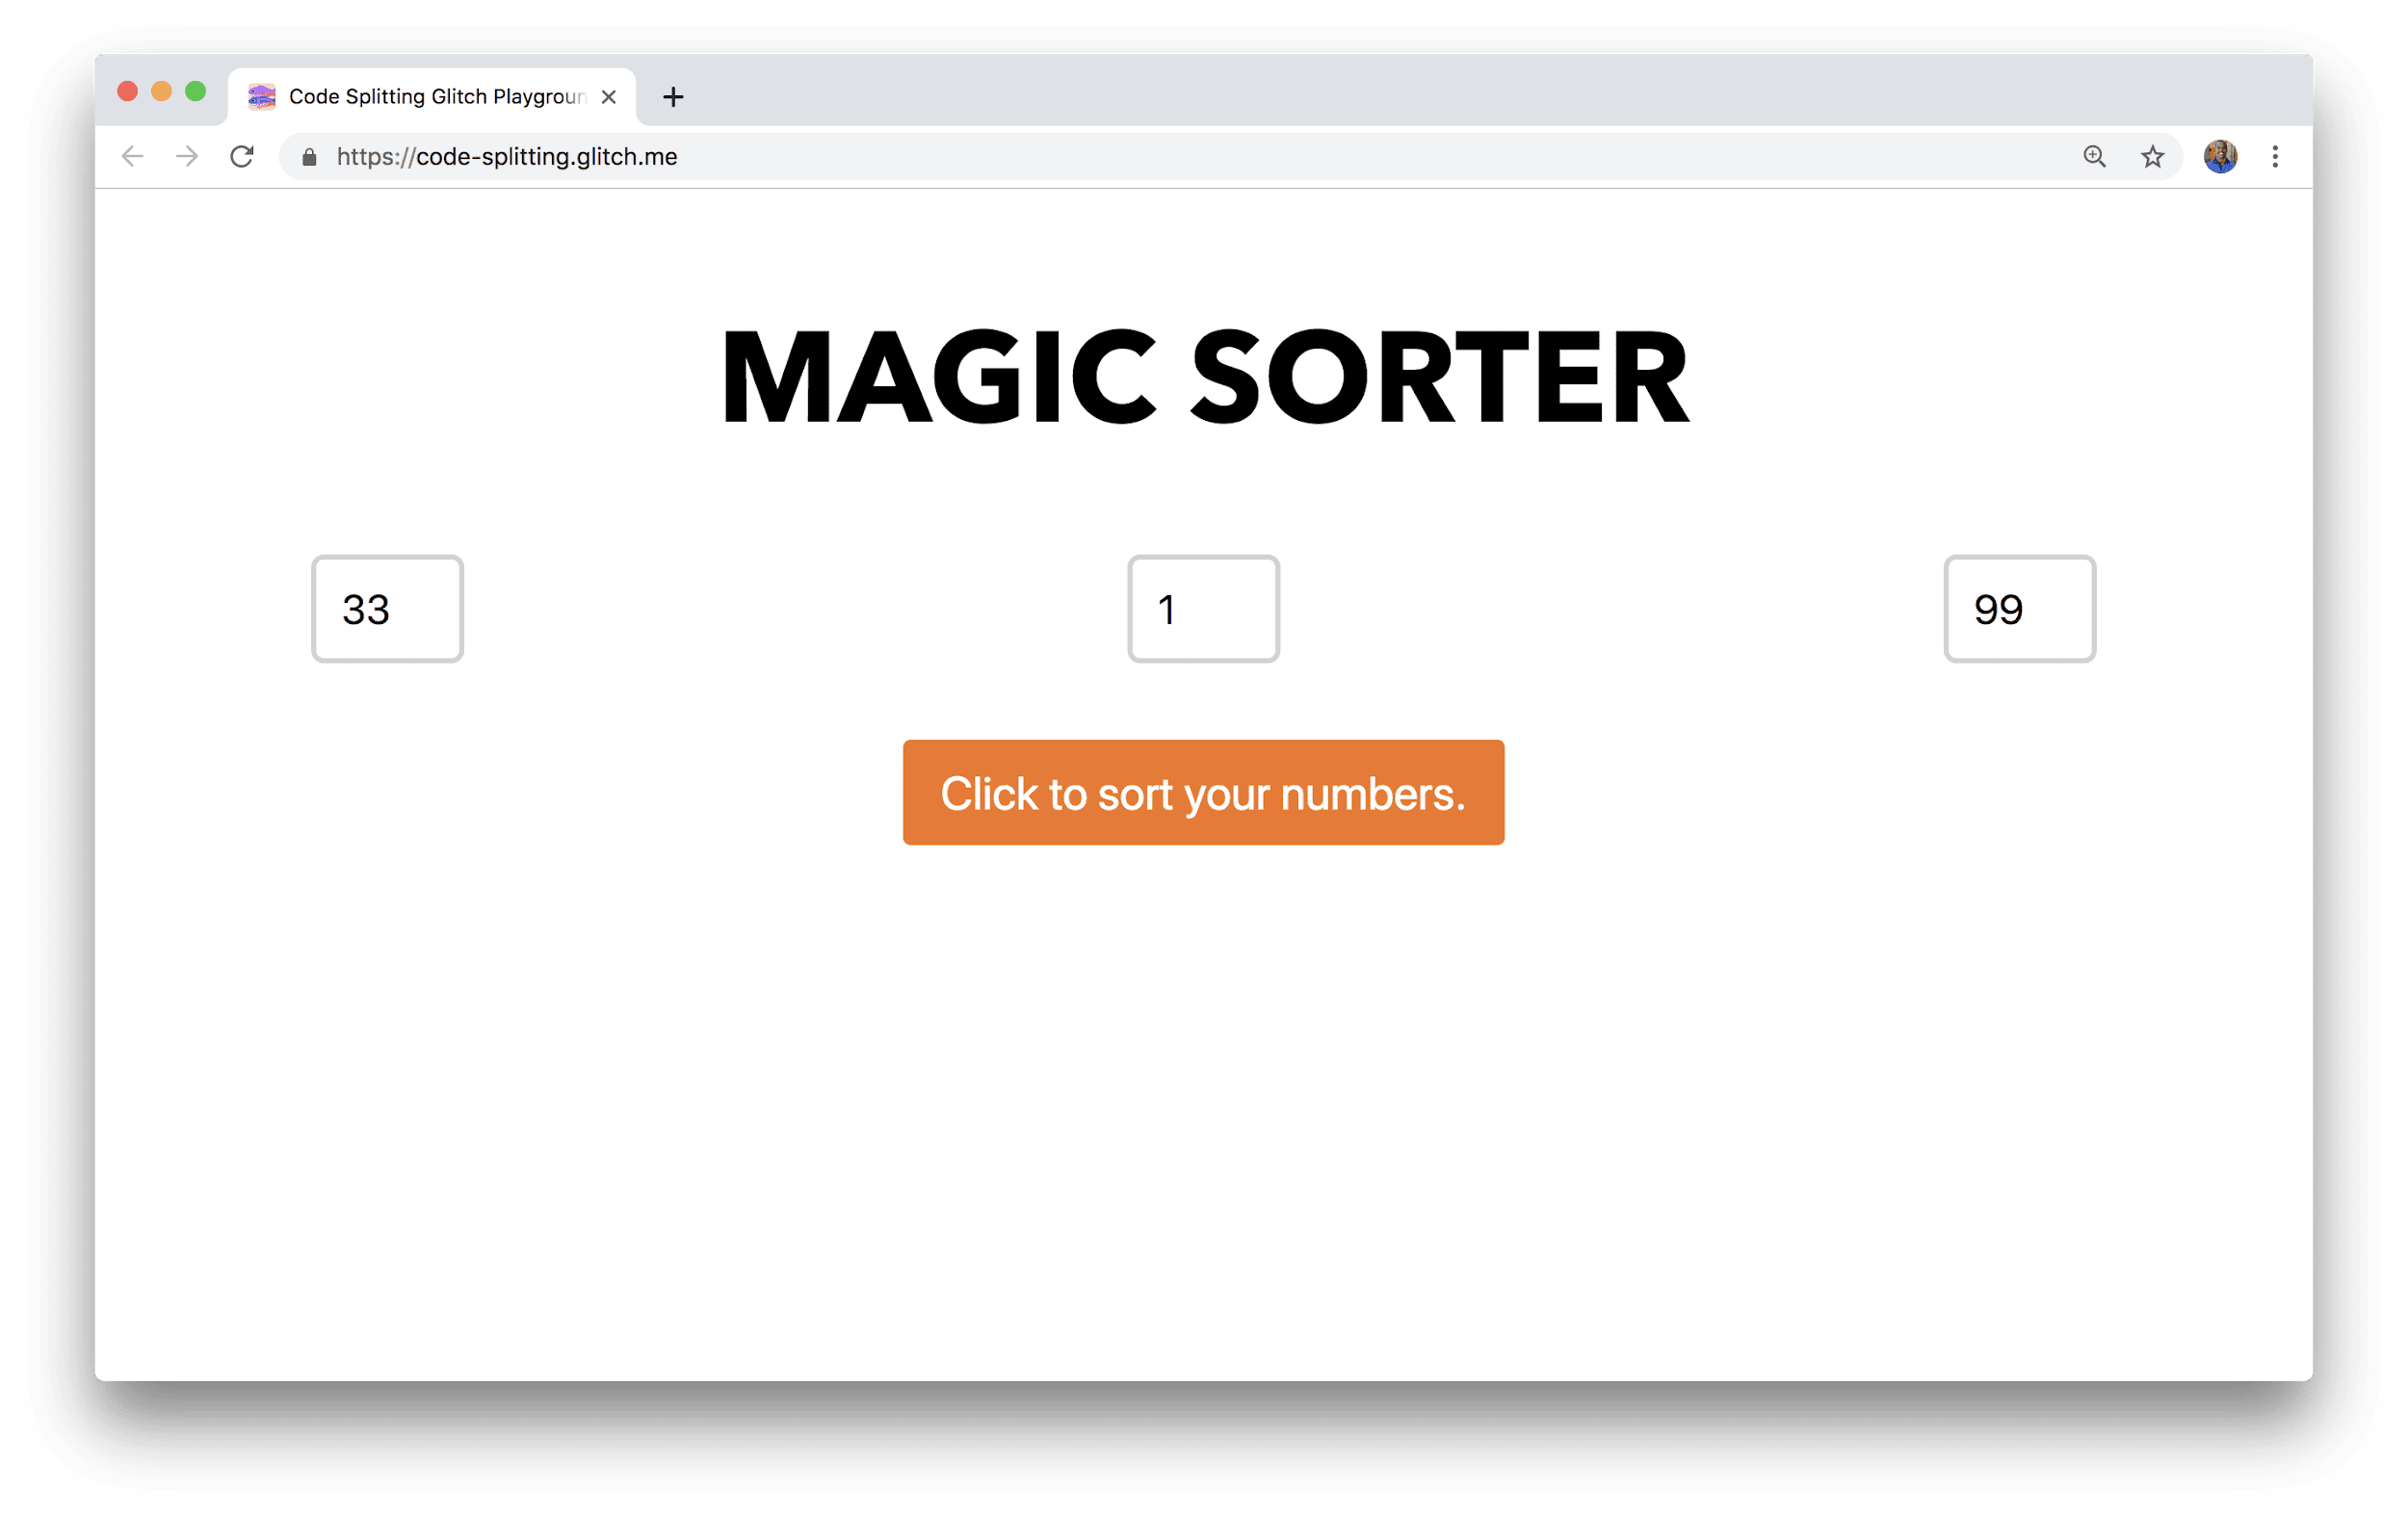 Ein Browserfenster zeigt eine Anwendung mit dem Titel „Magic Sorter“ mit drei Feldern zur Eingabe von Zahlen und einer Sortierschaltfläche.